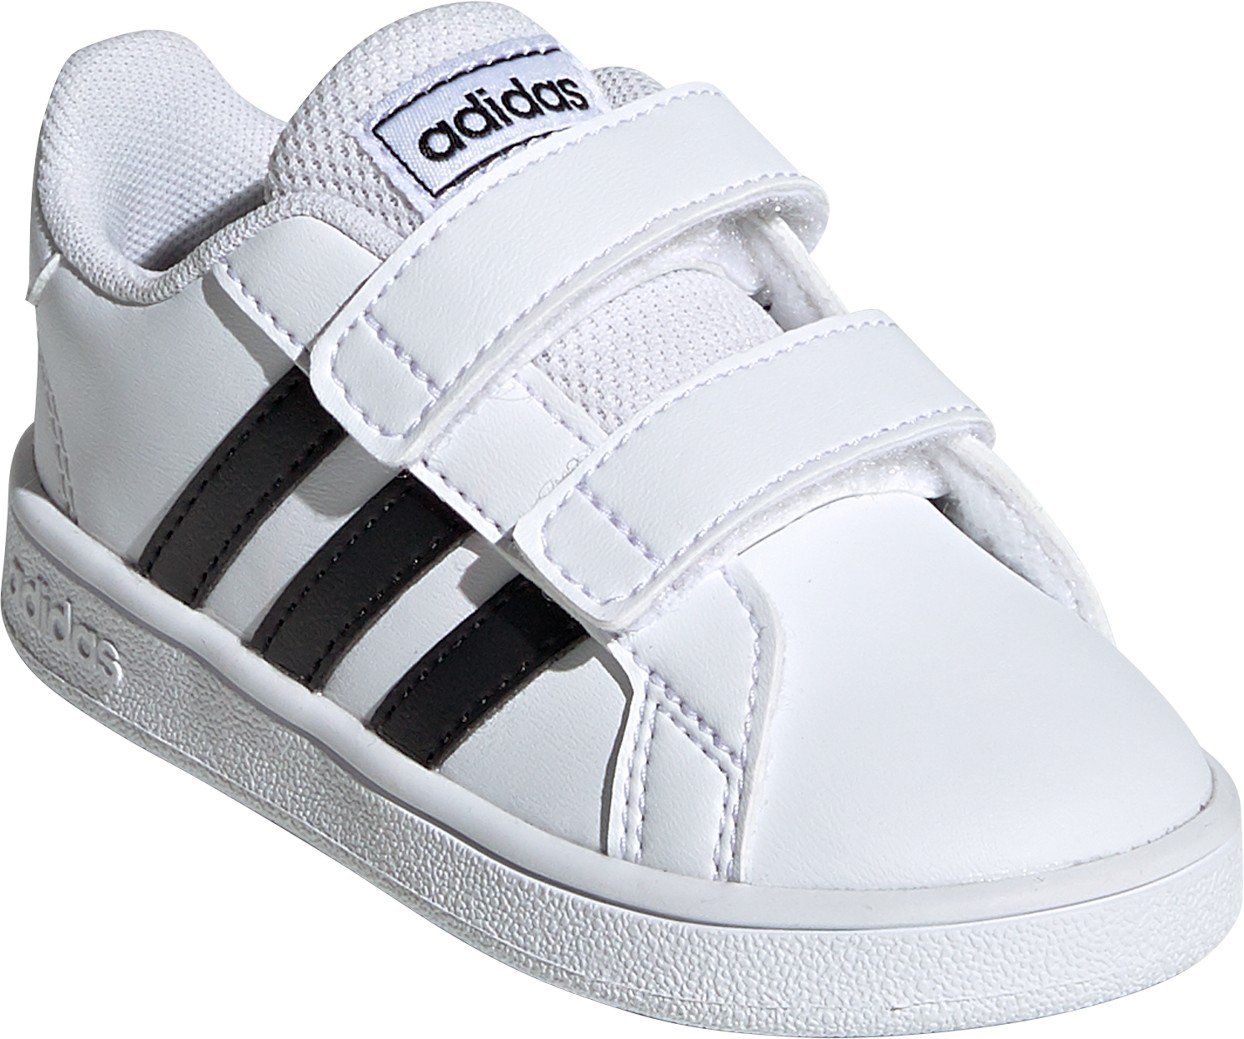 adidas for toddler girls